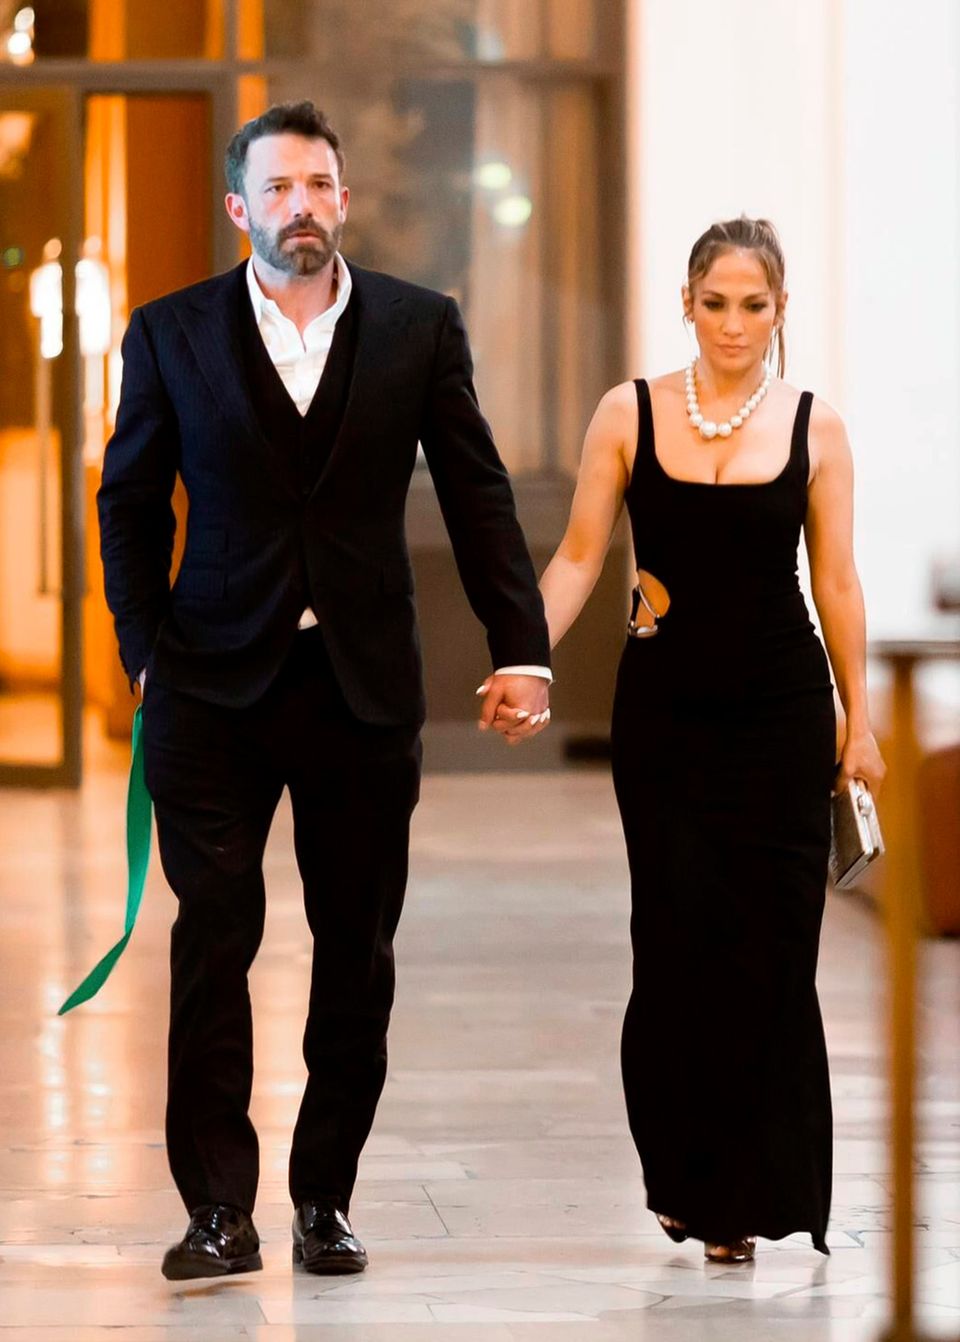 Ein französischer Traum wird wahr. Jennifer Lopez und Ben Affleck feiern J.Los 53ten Geburtstag. Mit Blick auf den Eiffelturm genießt das verliebte Paar den Abend. Zu der glamourösen Atmosphäre tragen beide hochelegante Outfits. In einem geschmackvollen Maxikleid in Schwarz entzückt die Latina nicht nur ihren Mann. Er selbst trägt einen feinen Anzug. Zusammen treten die beiden auf, wie in einem Liebesfilm. 